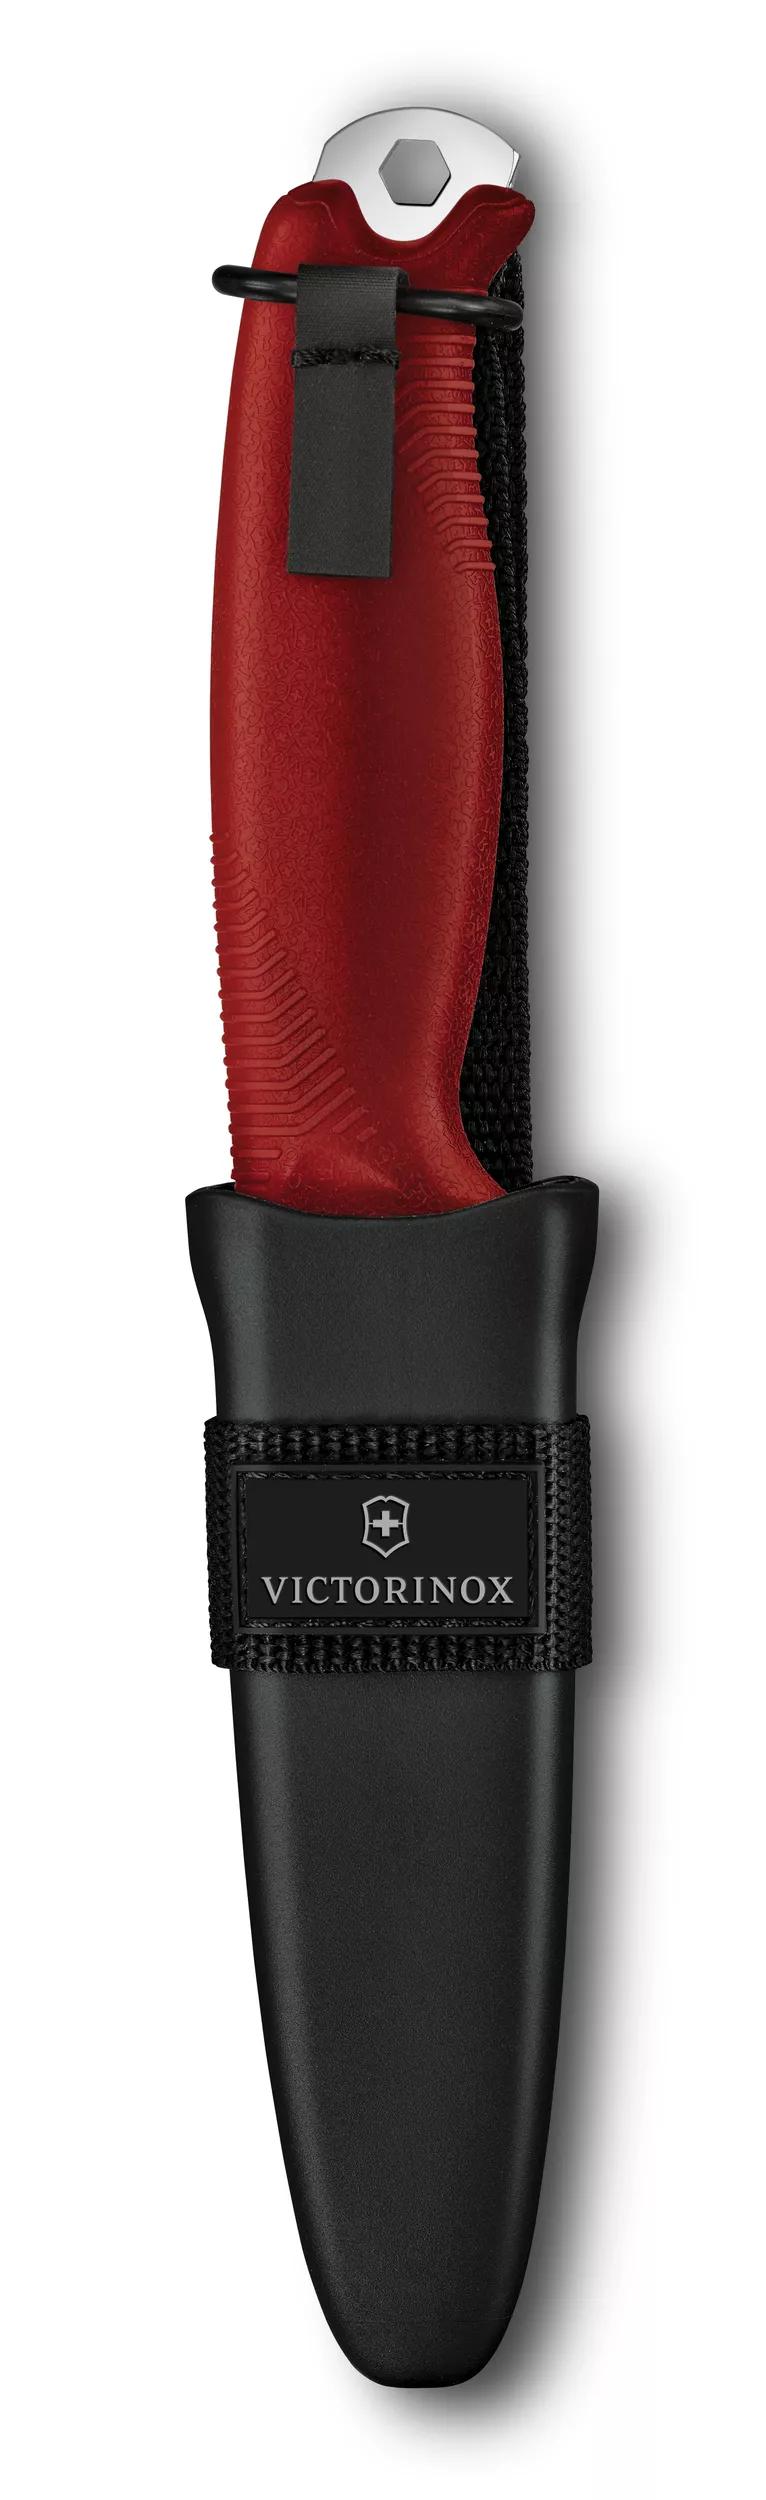 Victorinox Venture in red - 3.0902